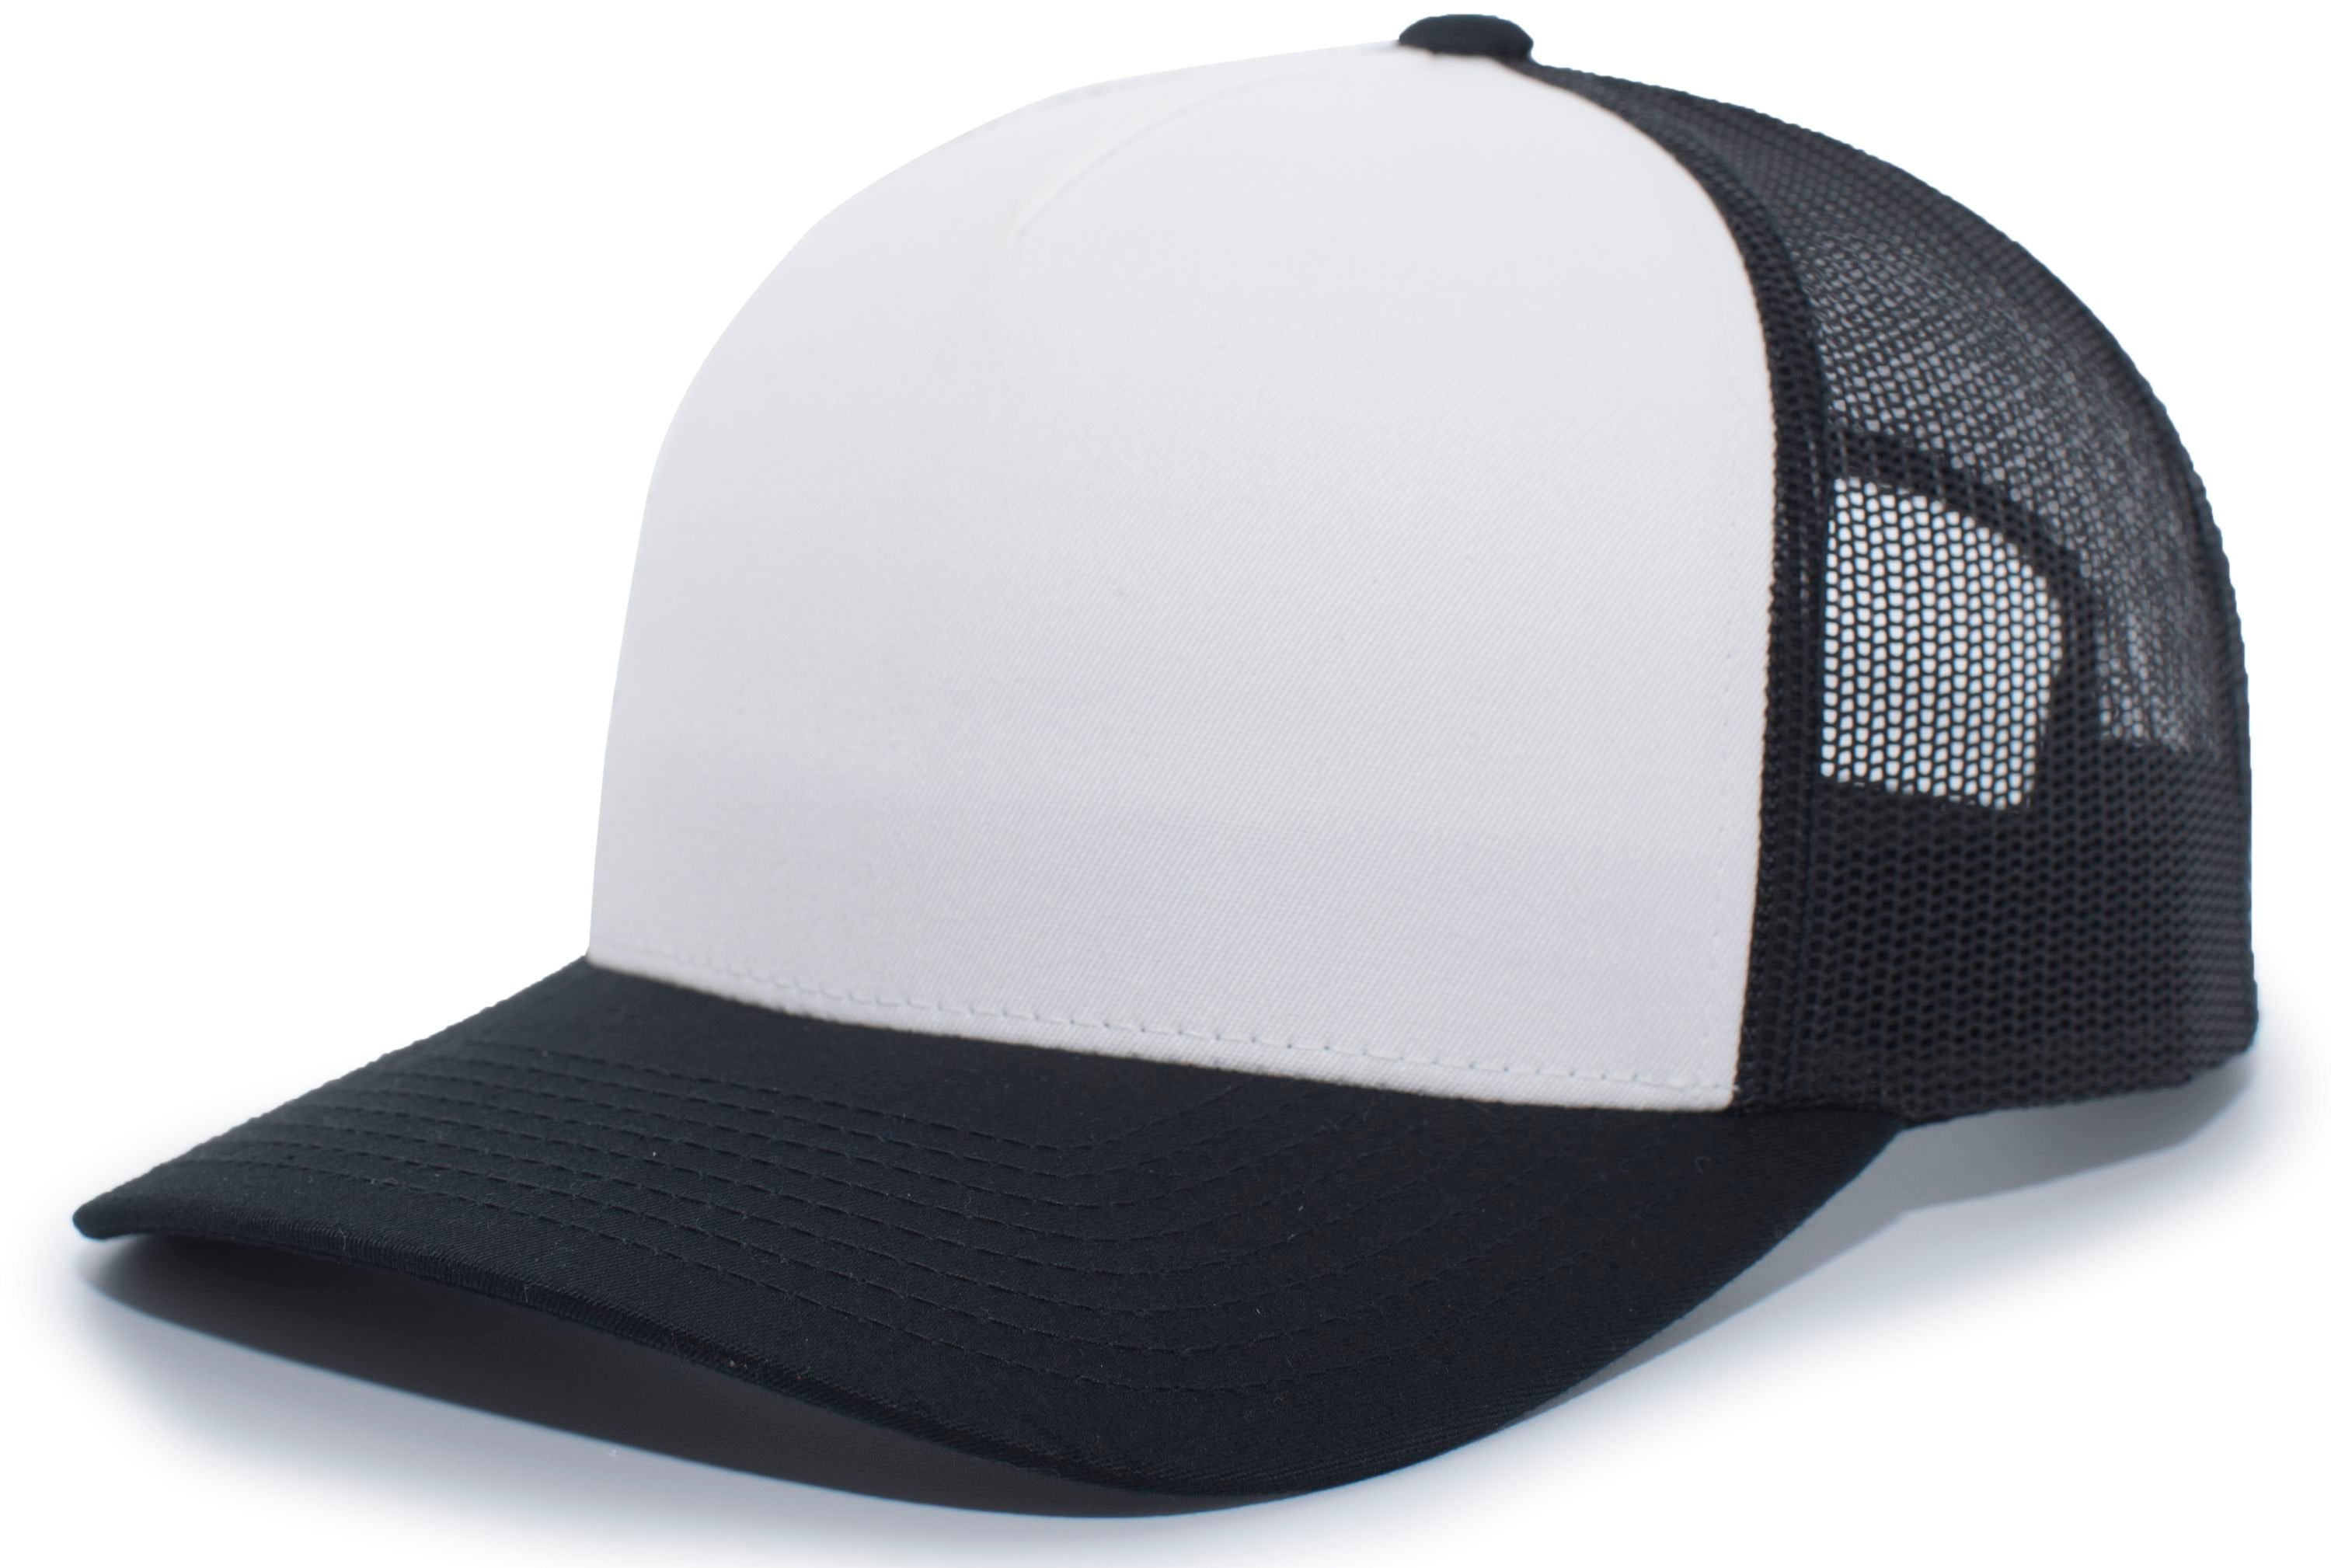 Pacific Headwear 5-panel Trucker Snapback Cap